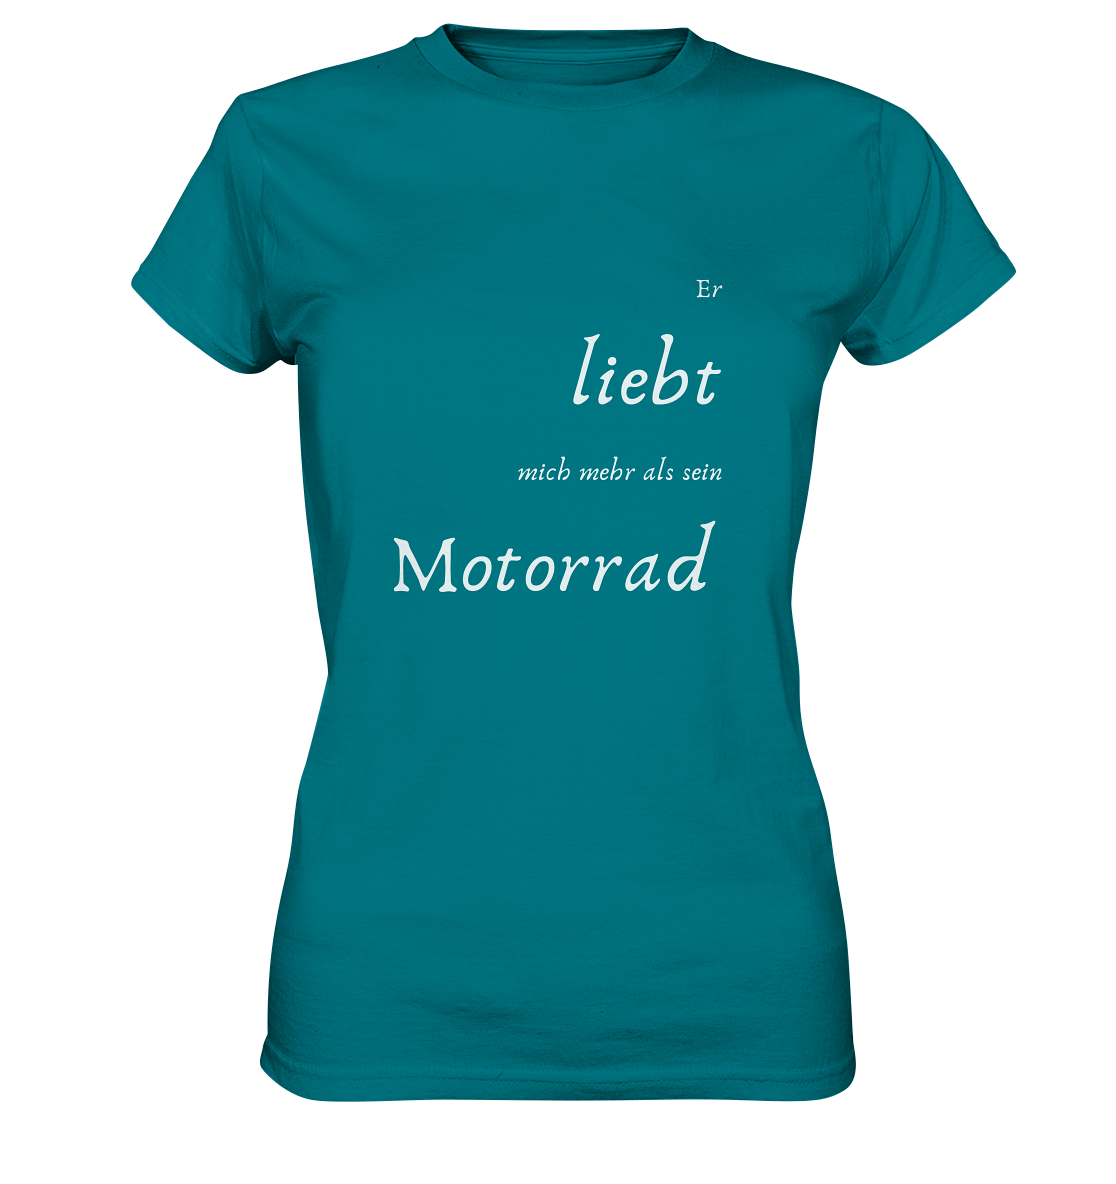 Damen-T-Shirt Rundhals mit beidseitigem weißen Aufdruck, vorn "Er liebt mich mehr als ihr Motorrad." hinten: "Glaub ich." türkis